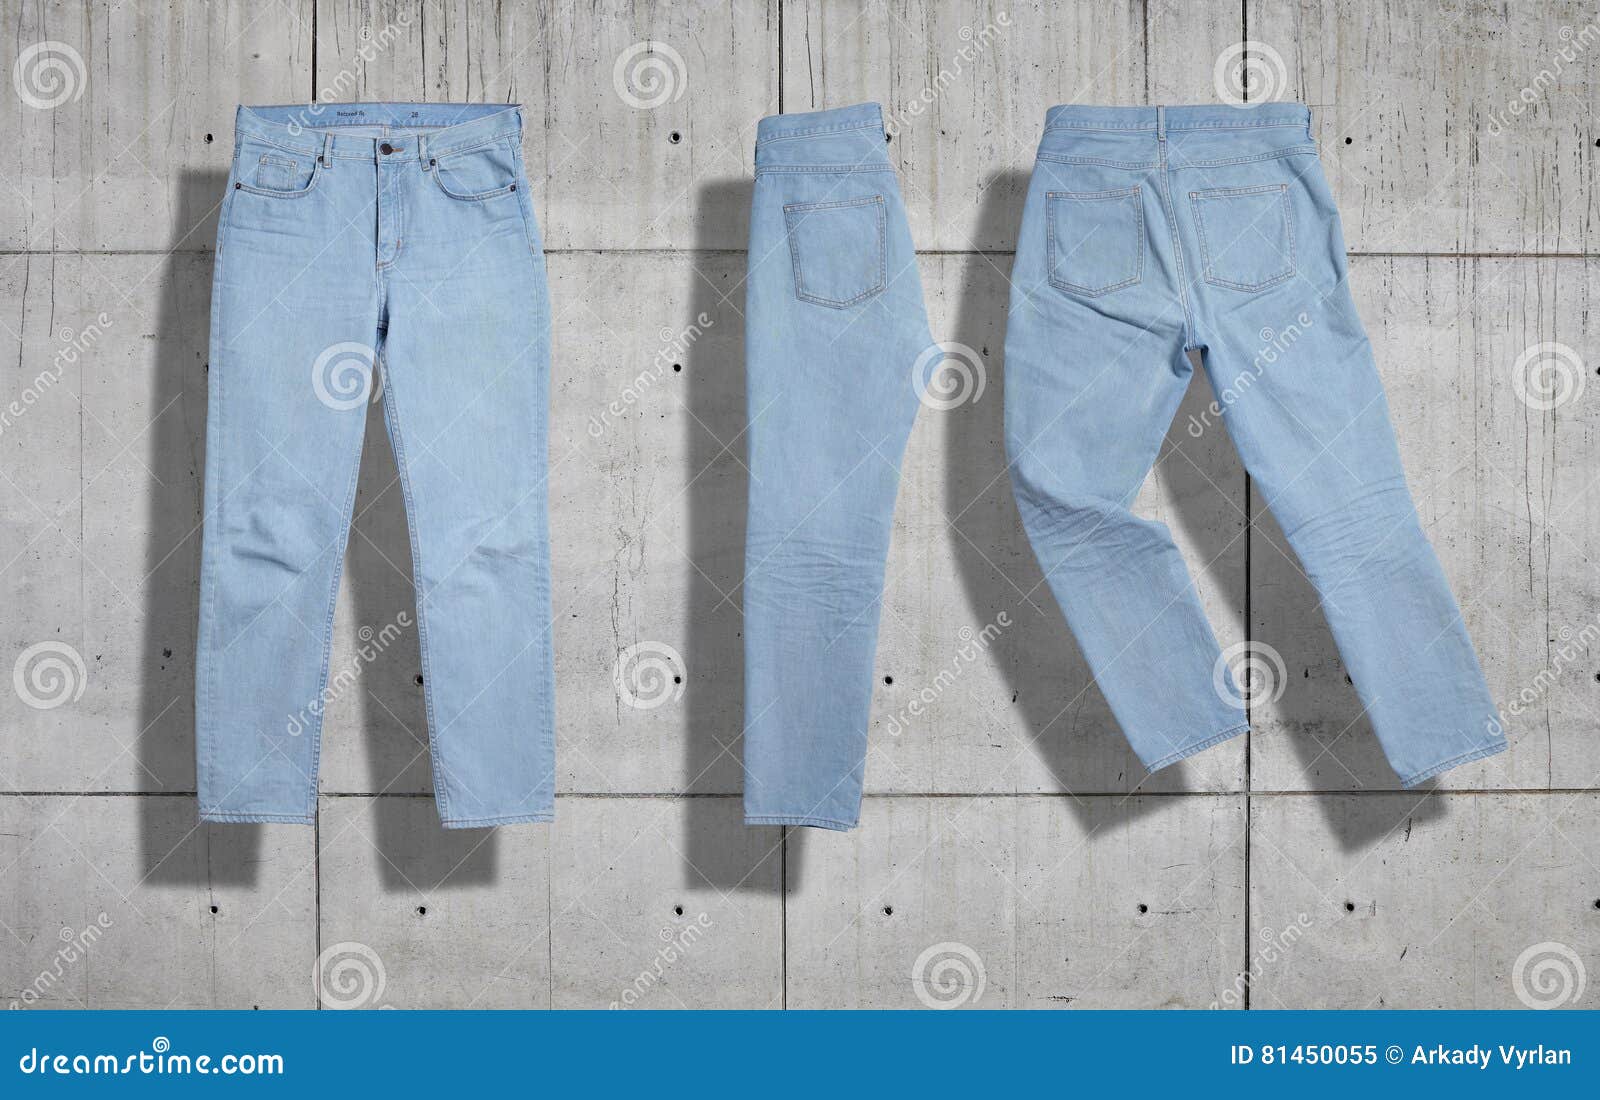 jeans mockup set